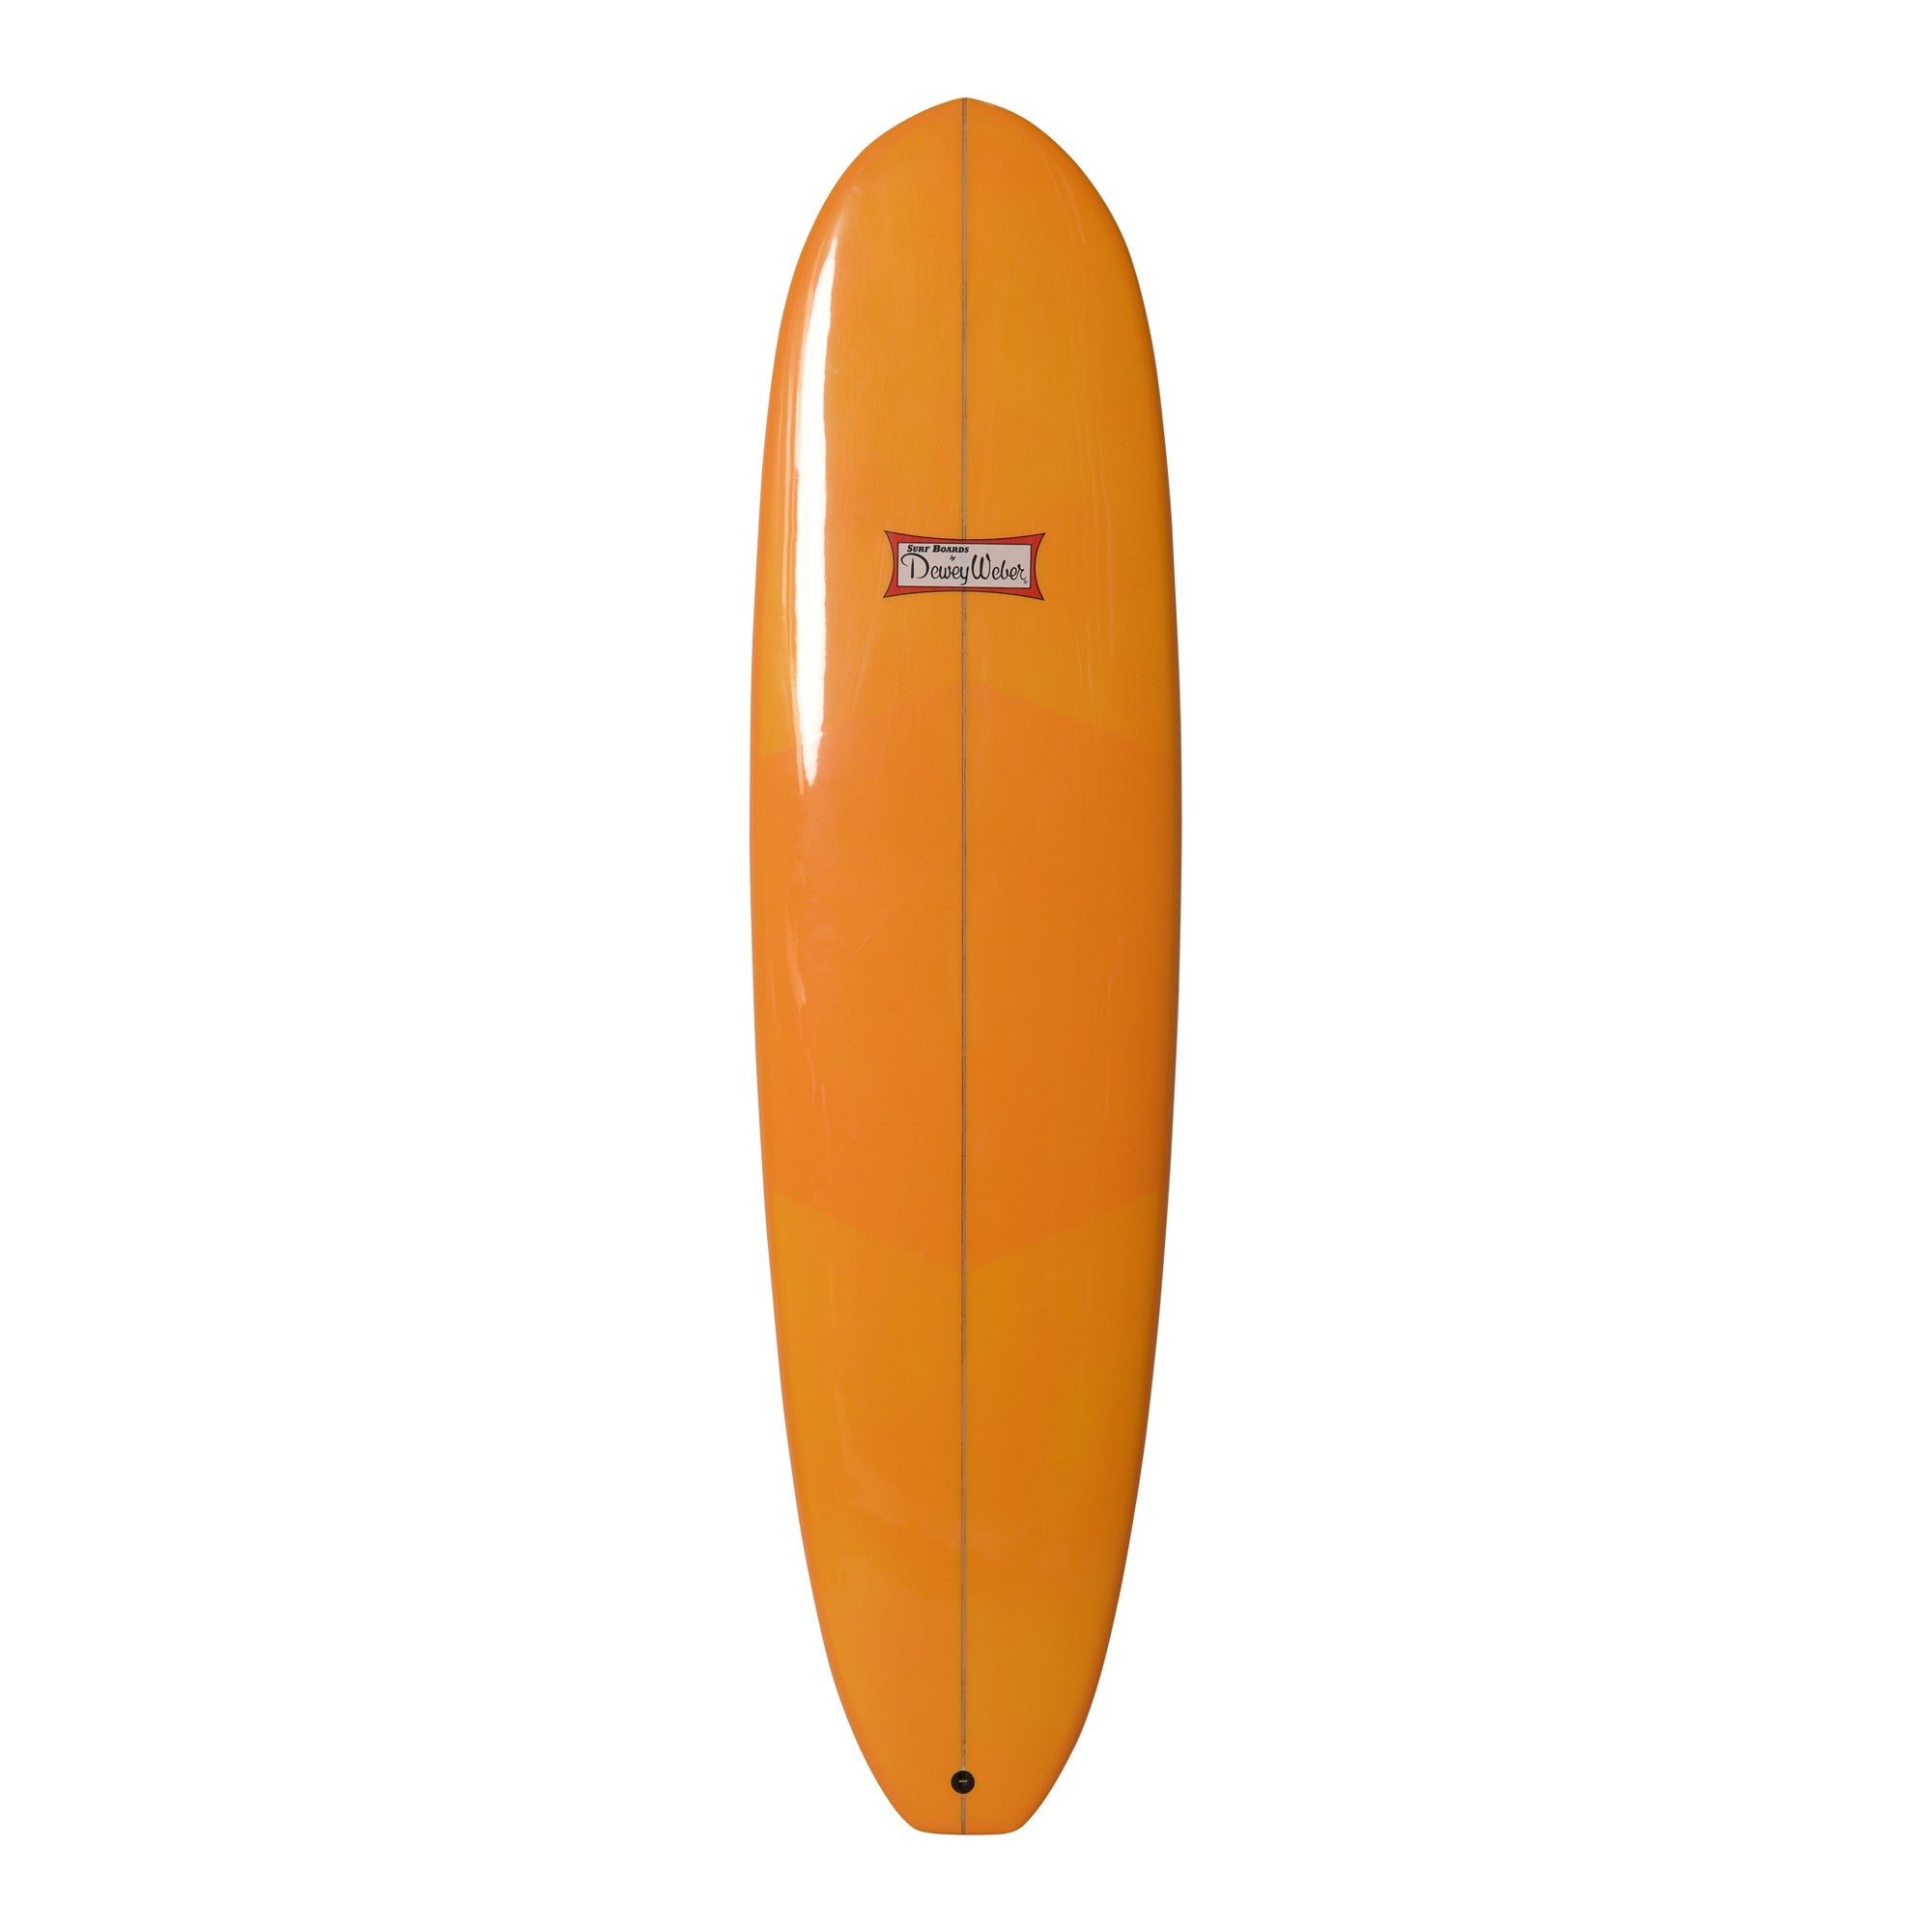 WEBER SURFBOARDS - Quantum 7'6 - Orange